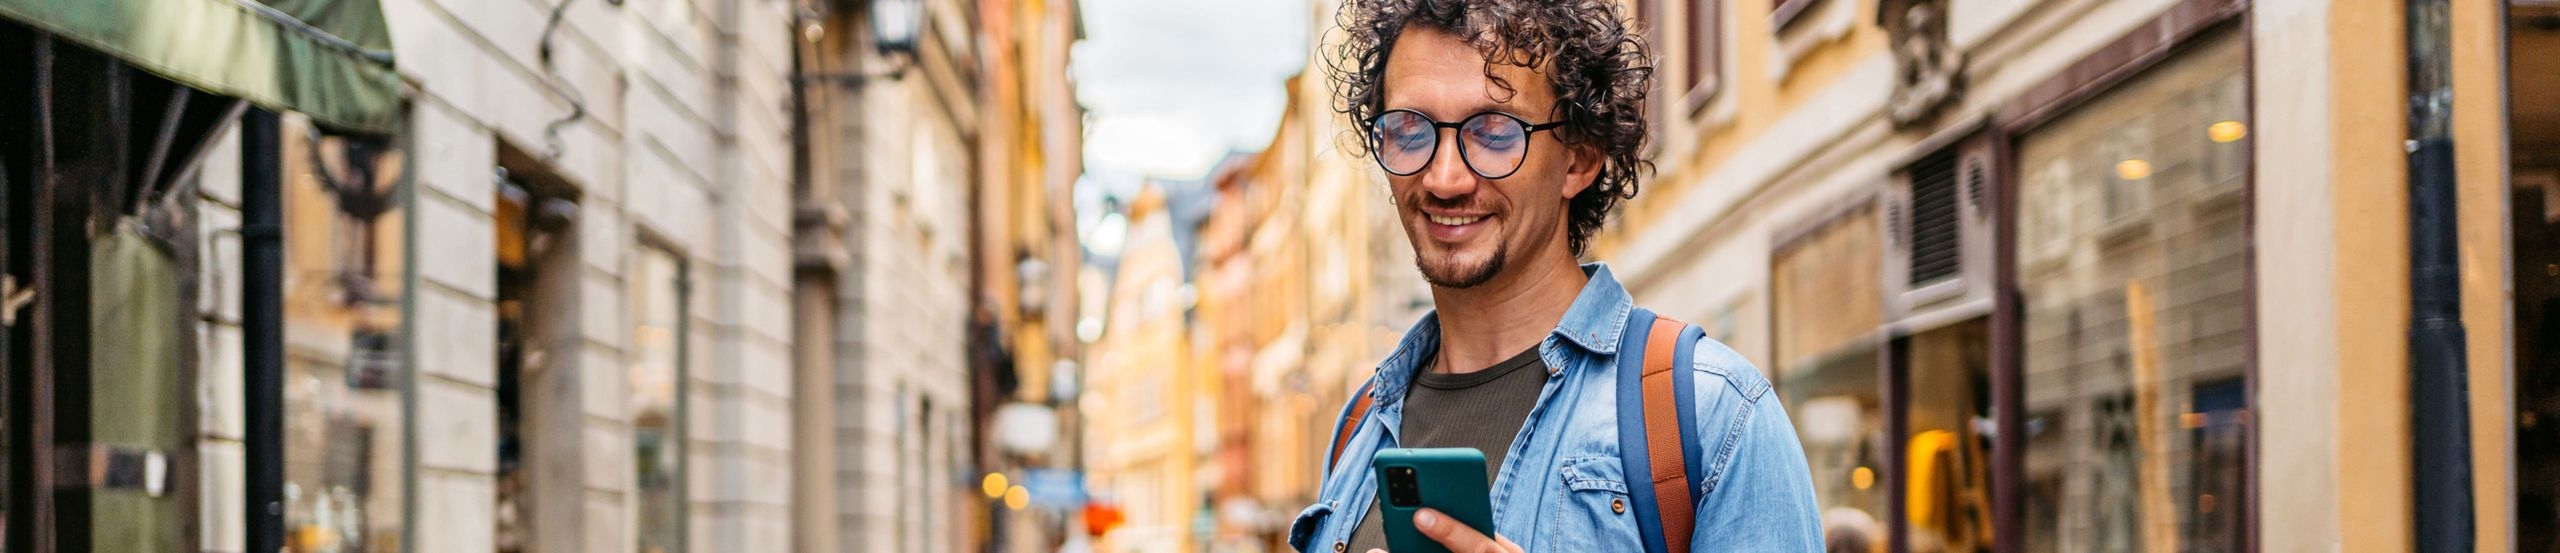 Ein Mann im Jeanshemd steht in einer Straße voller Boutiquen und schaut auf sein Smartphone